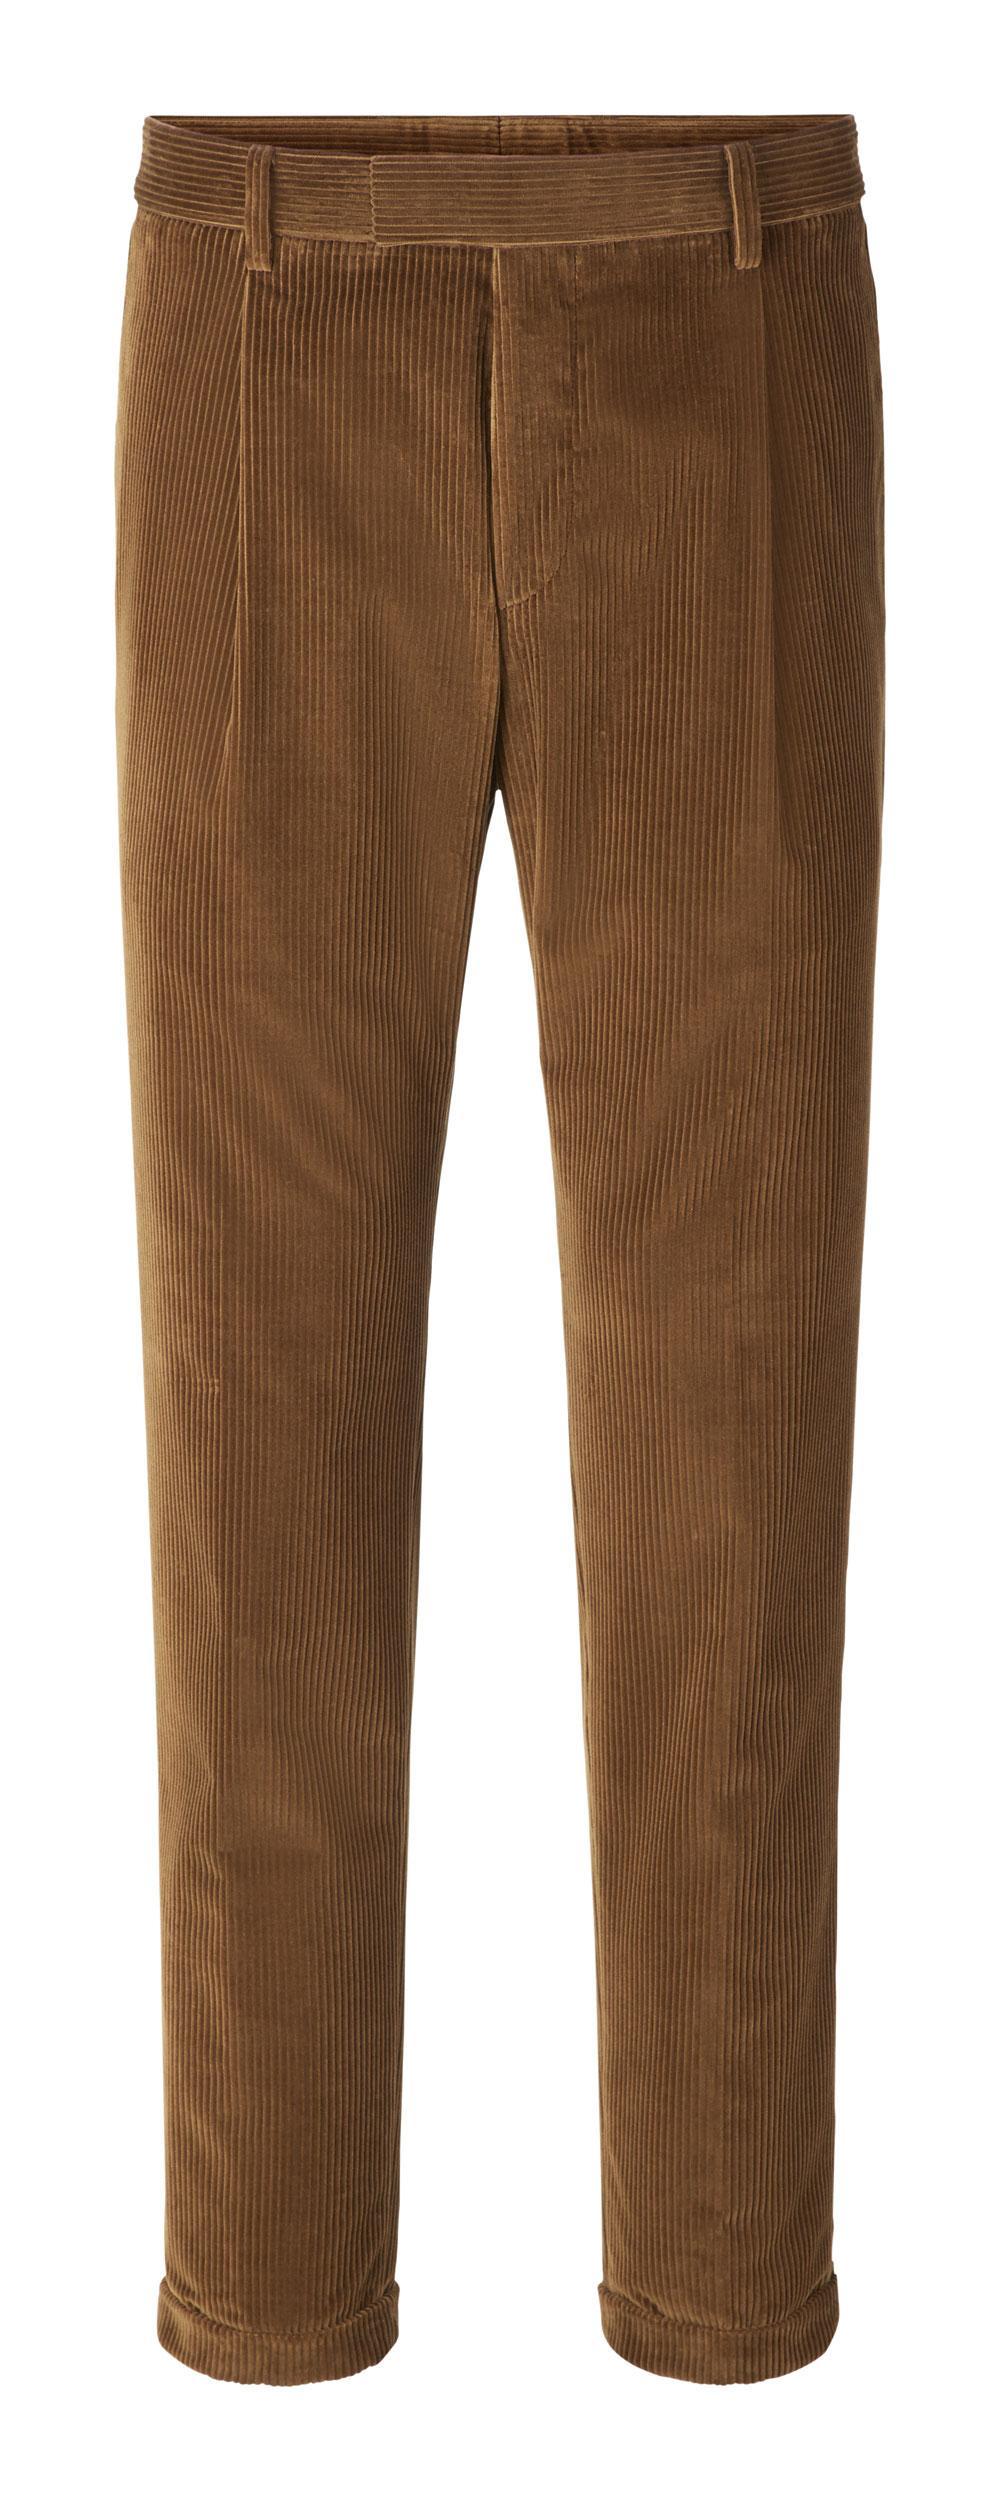 Pantalon en velours côtelé, Strellson, 149 euros.